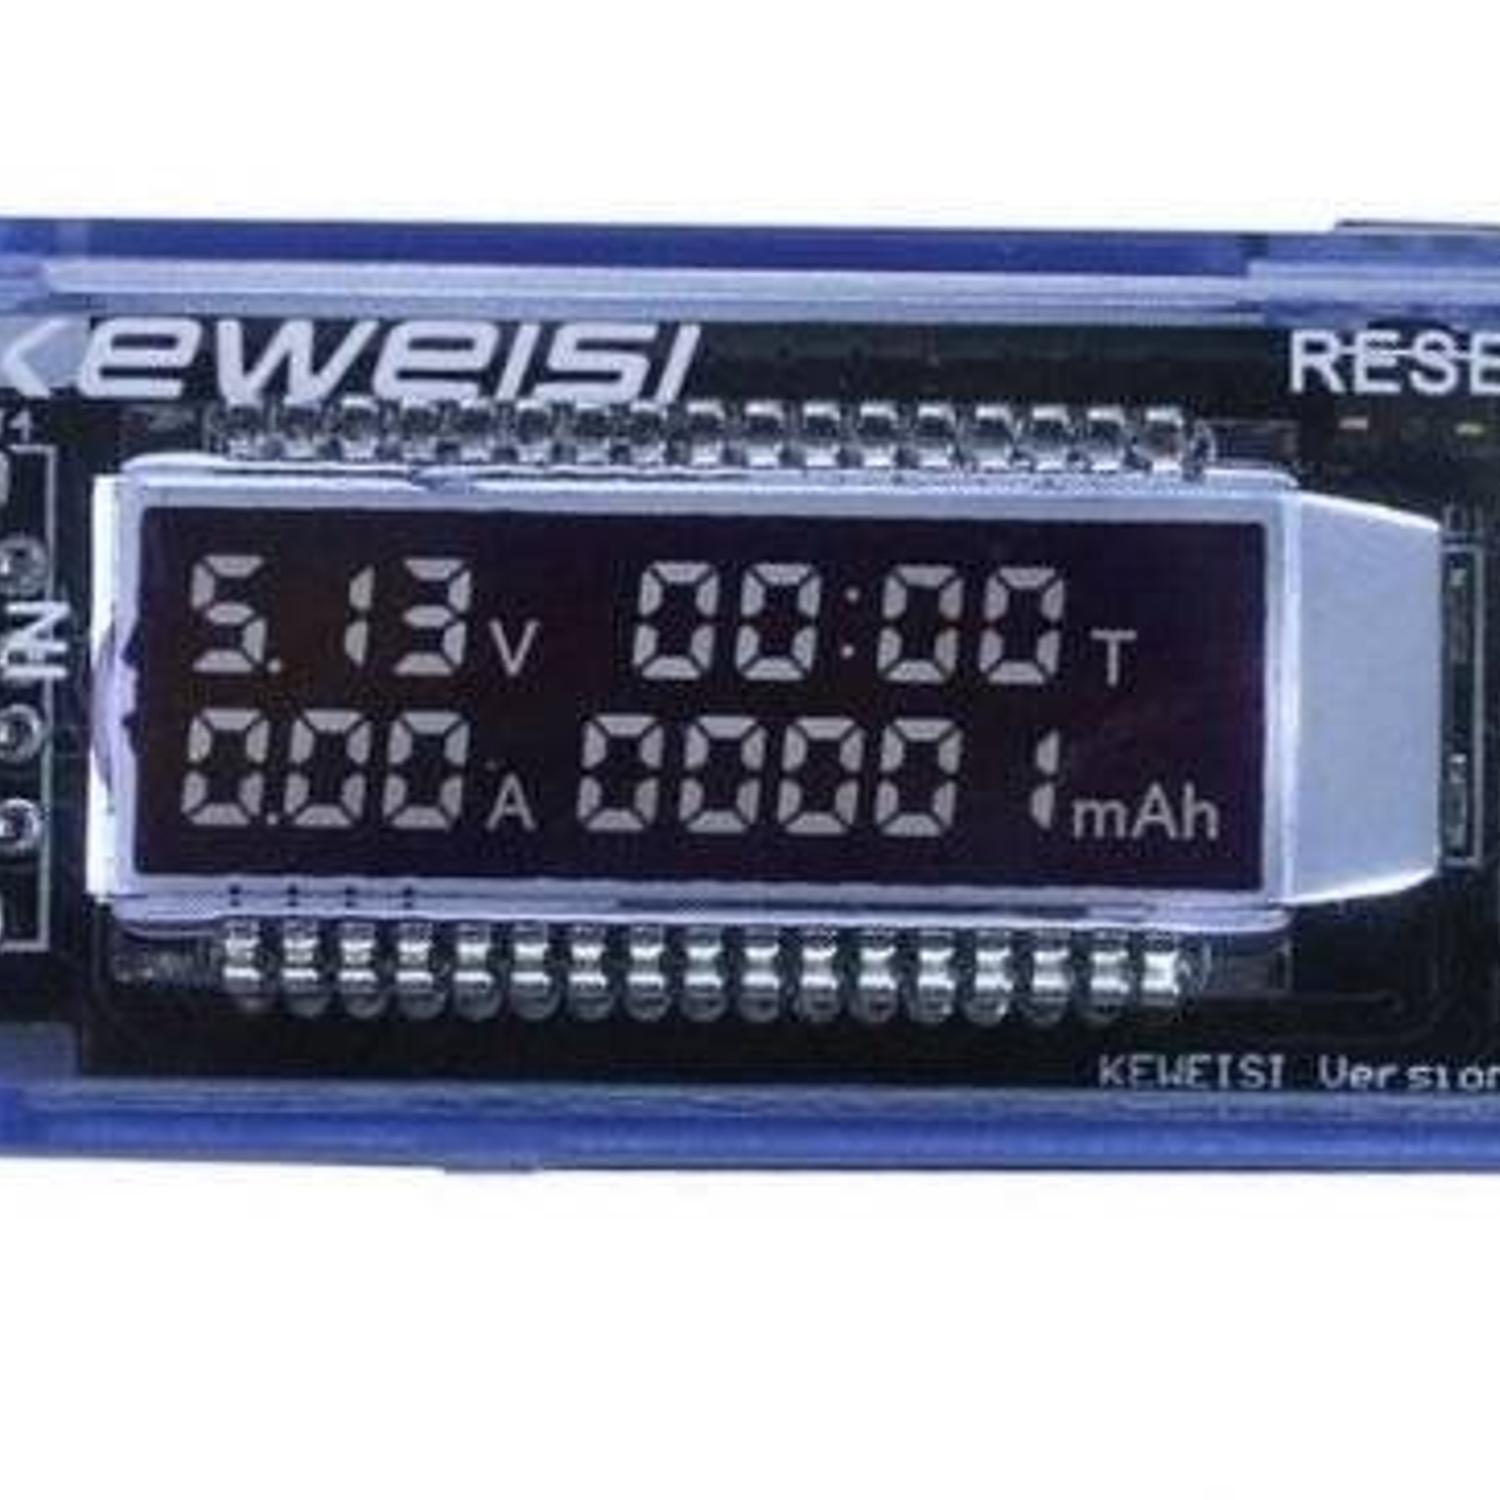 Usb Tester Probador Voltaje-Amperaje Digital Keweisi KWS-V20